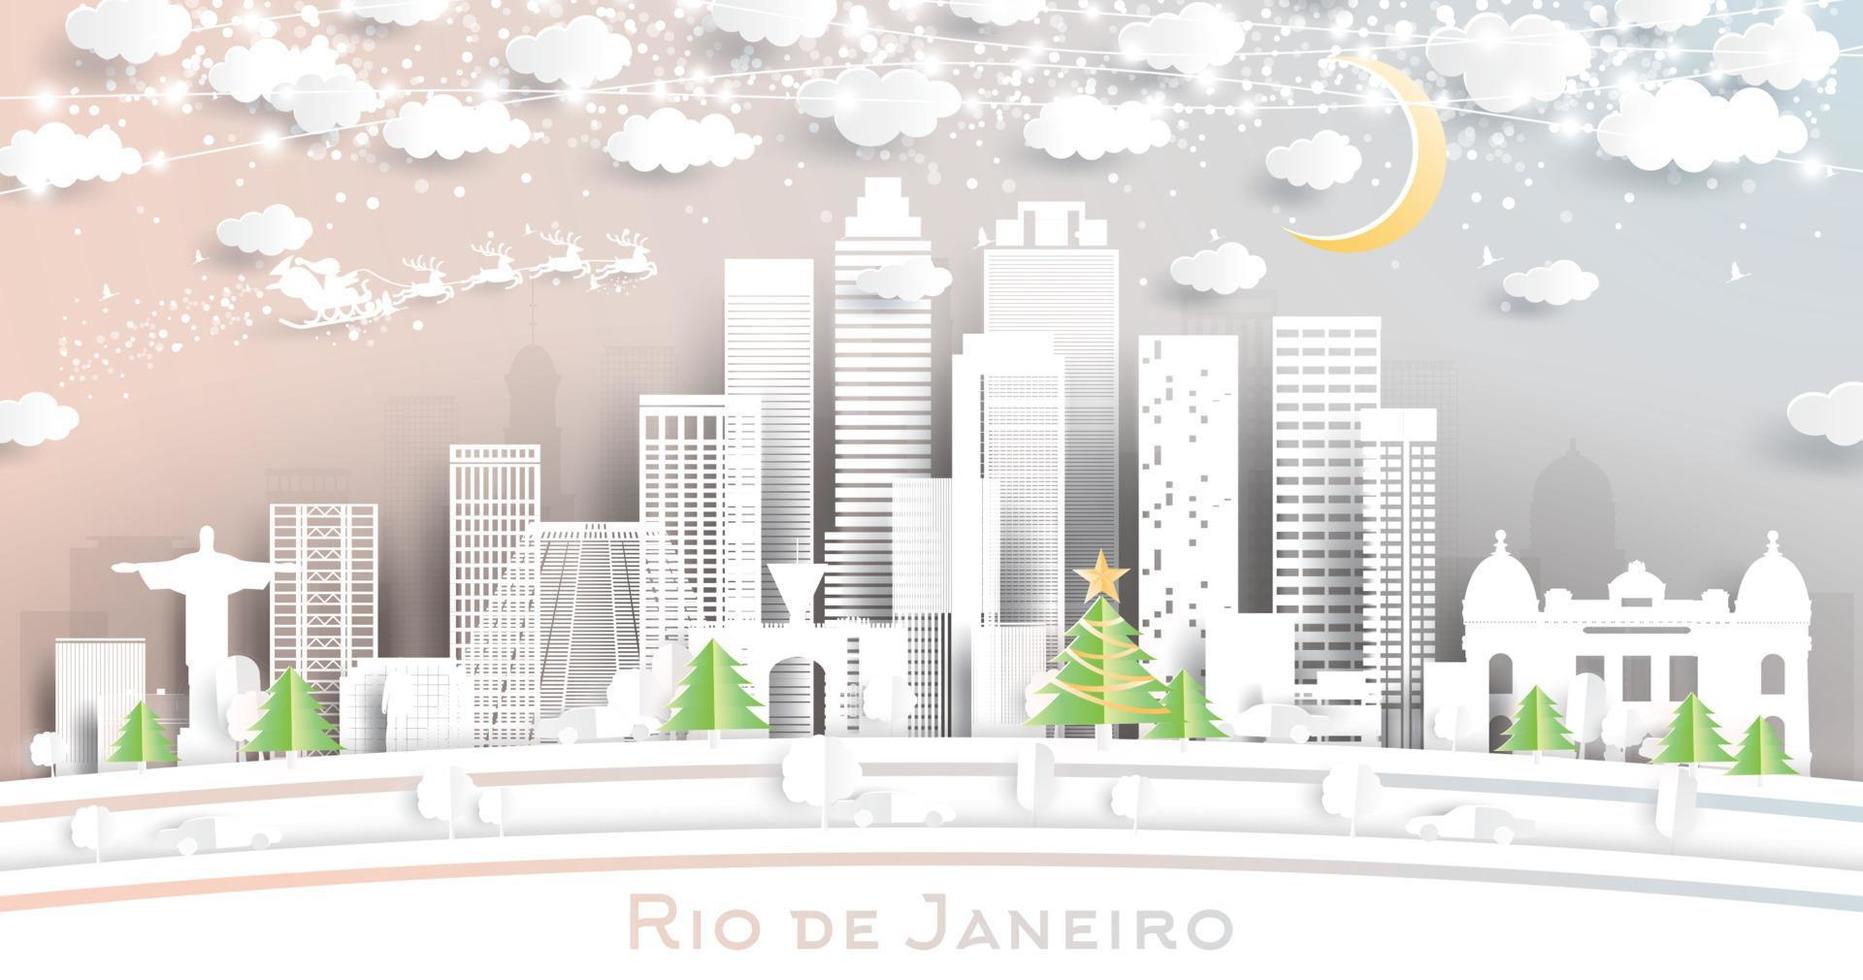 horizonte de la ciudad de río de janeiro brasil en estilo de corte de papel con copos de nieve, luna y guirnalda de neón. vector